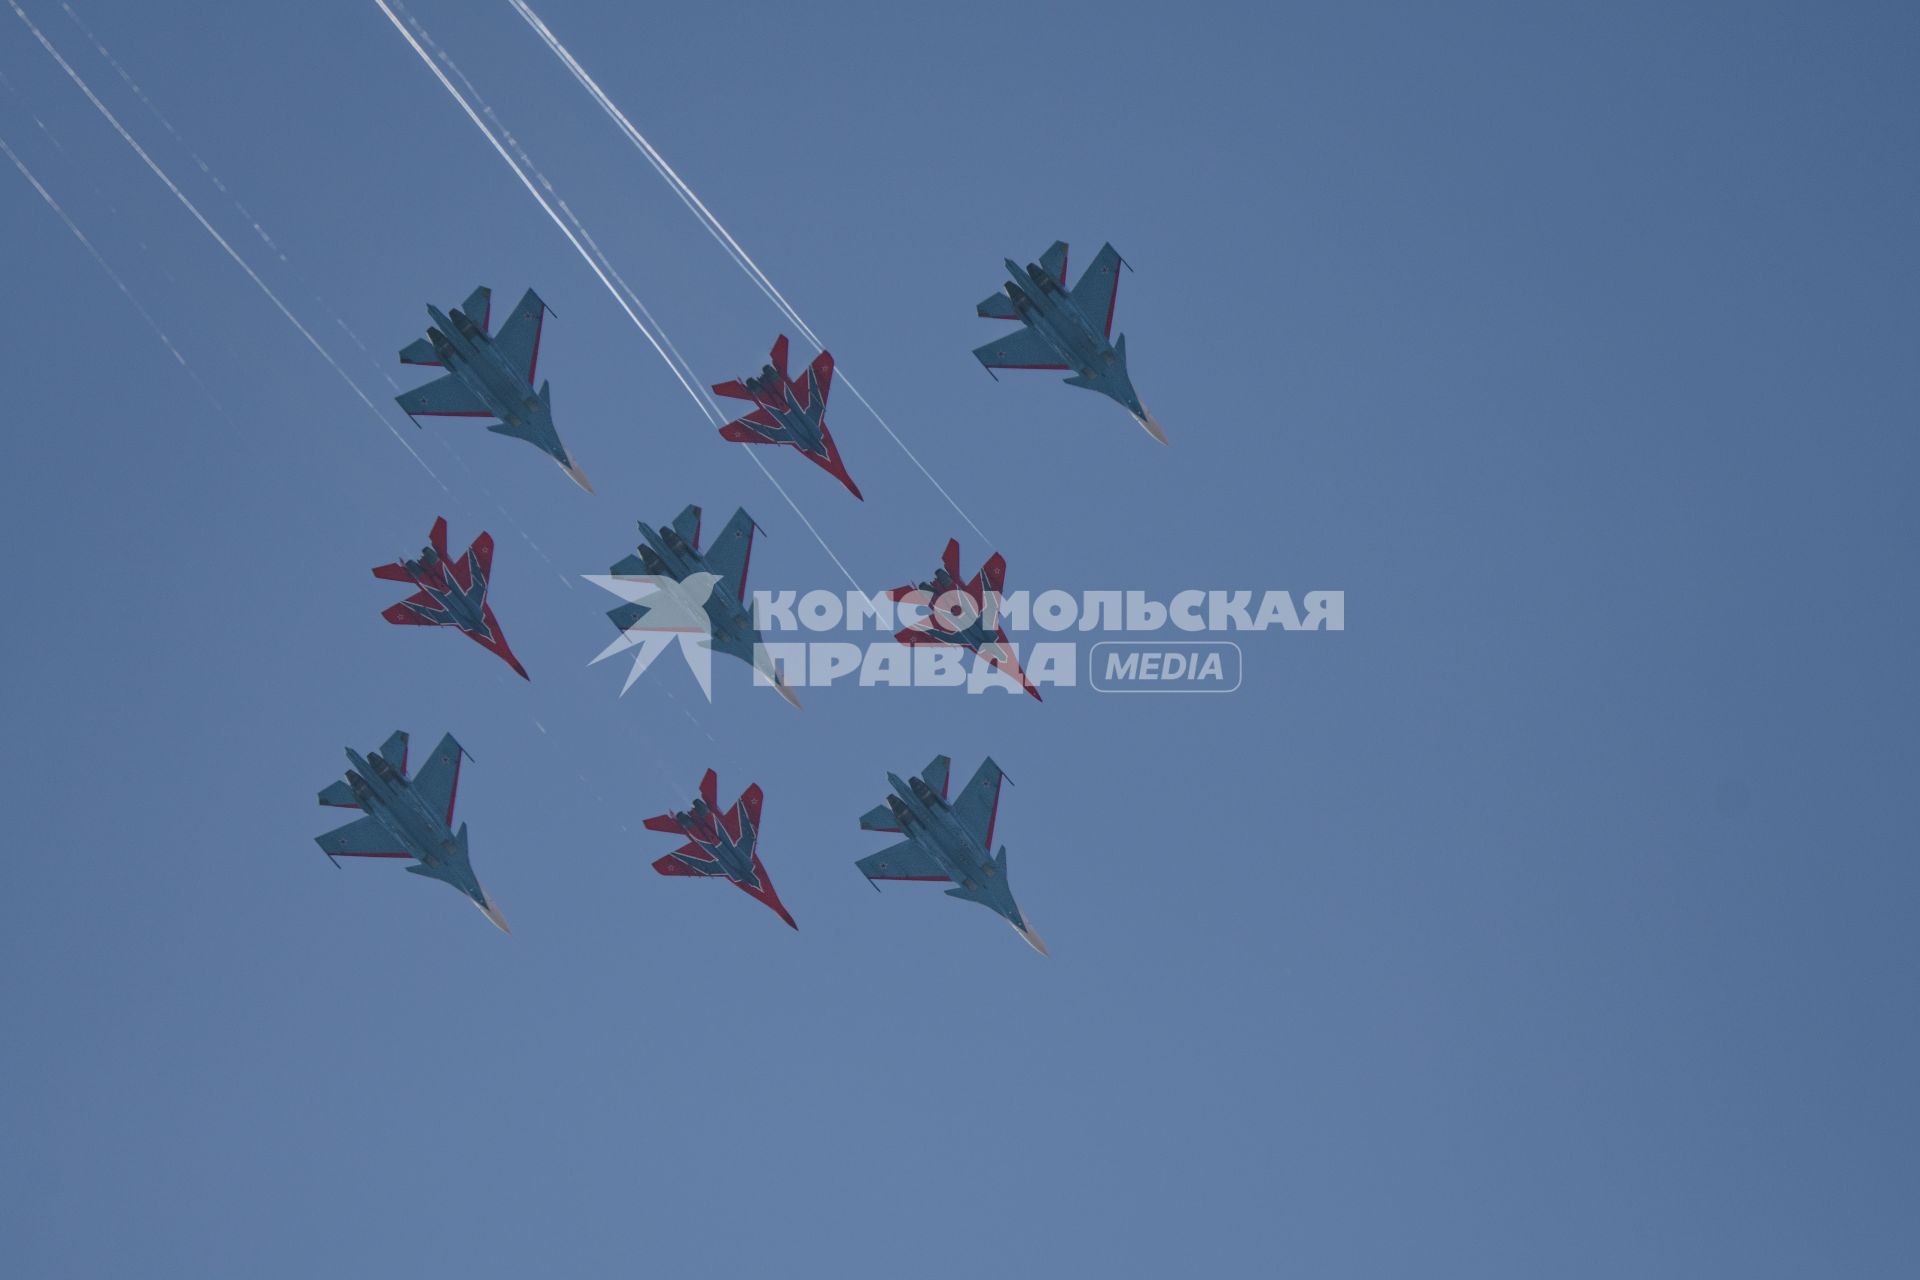 Московская область, Кубинка. Истребители Су-30СМ  и  МиГ-29 пилотажной группы `Стрижи`совершают демонстрационный полет`Кубинский бриллиант` во время репетиции воздушной части парада Победы  над Алабино.